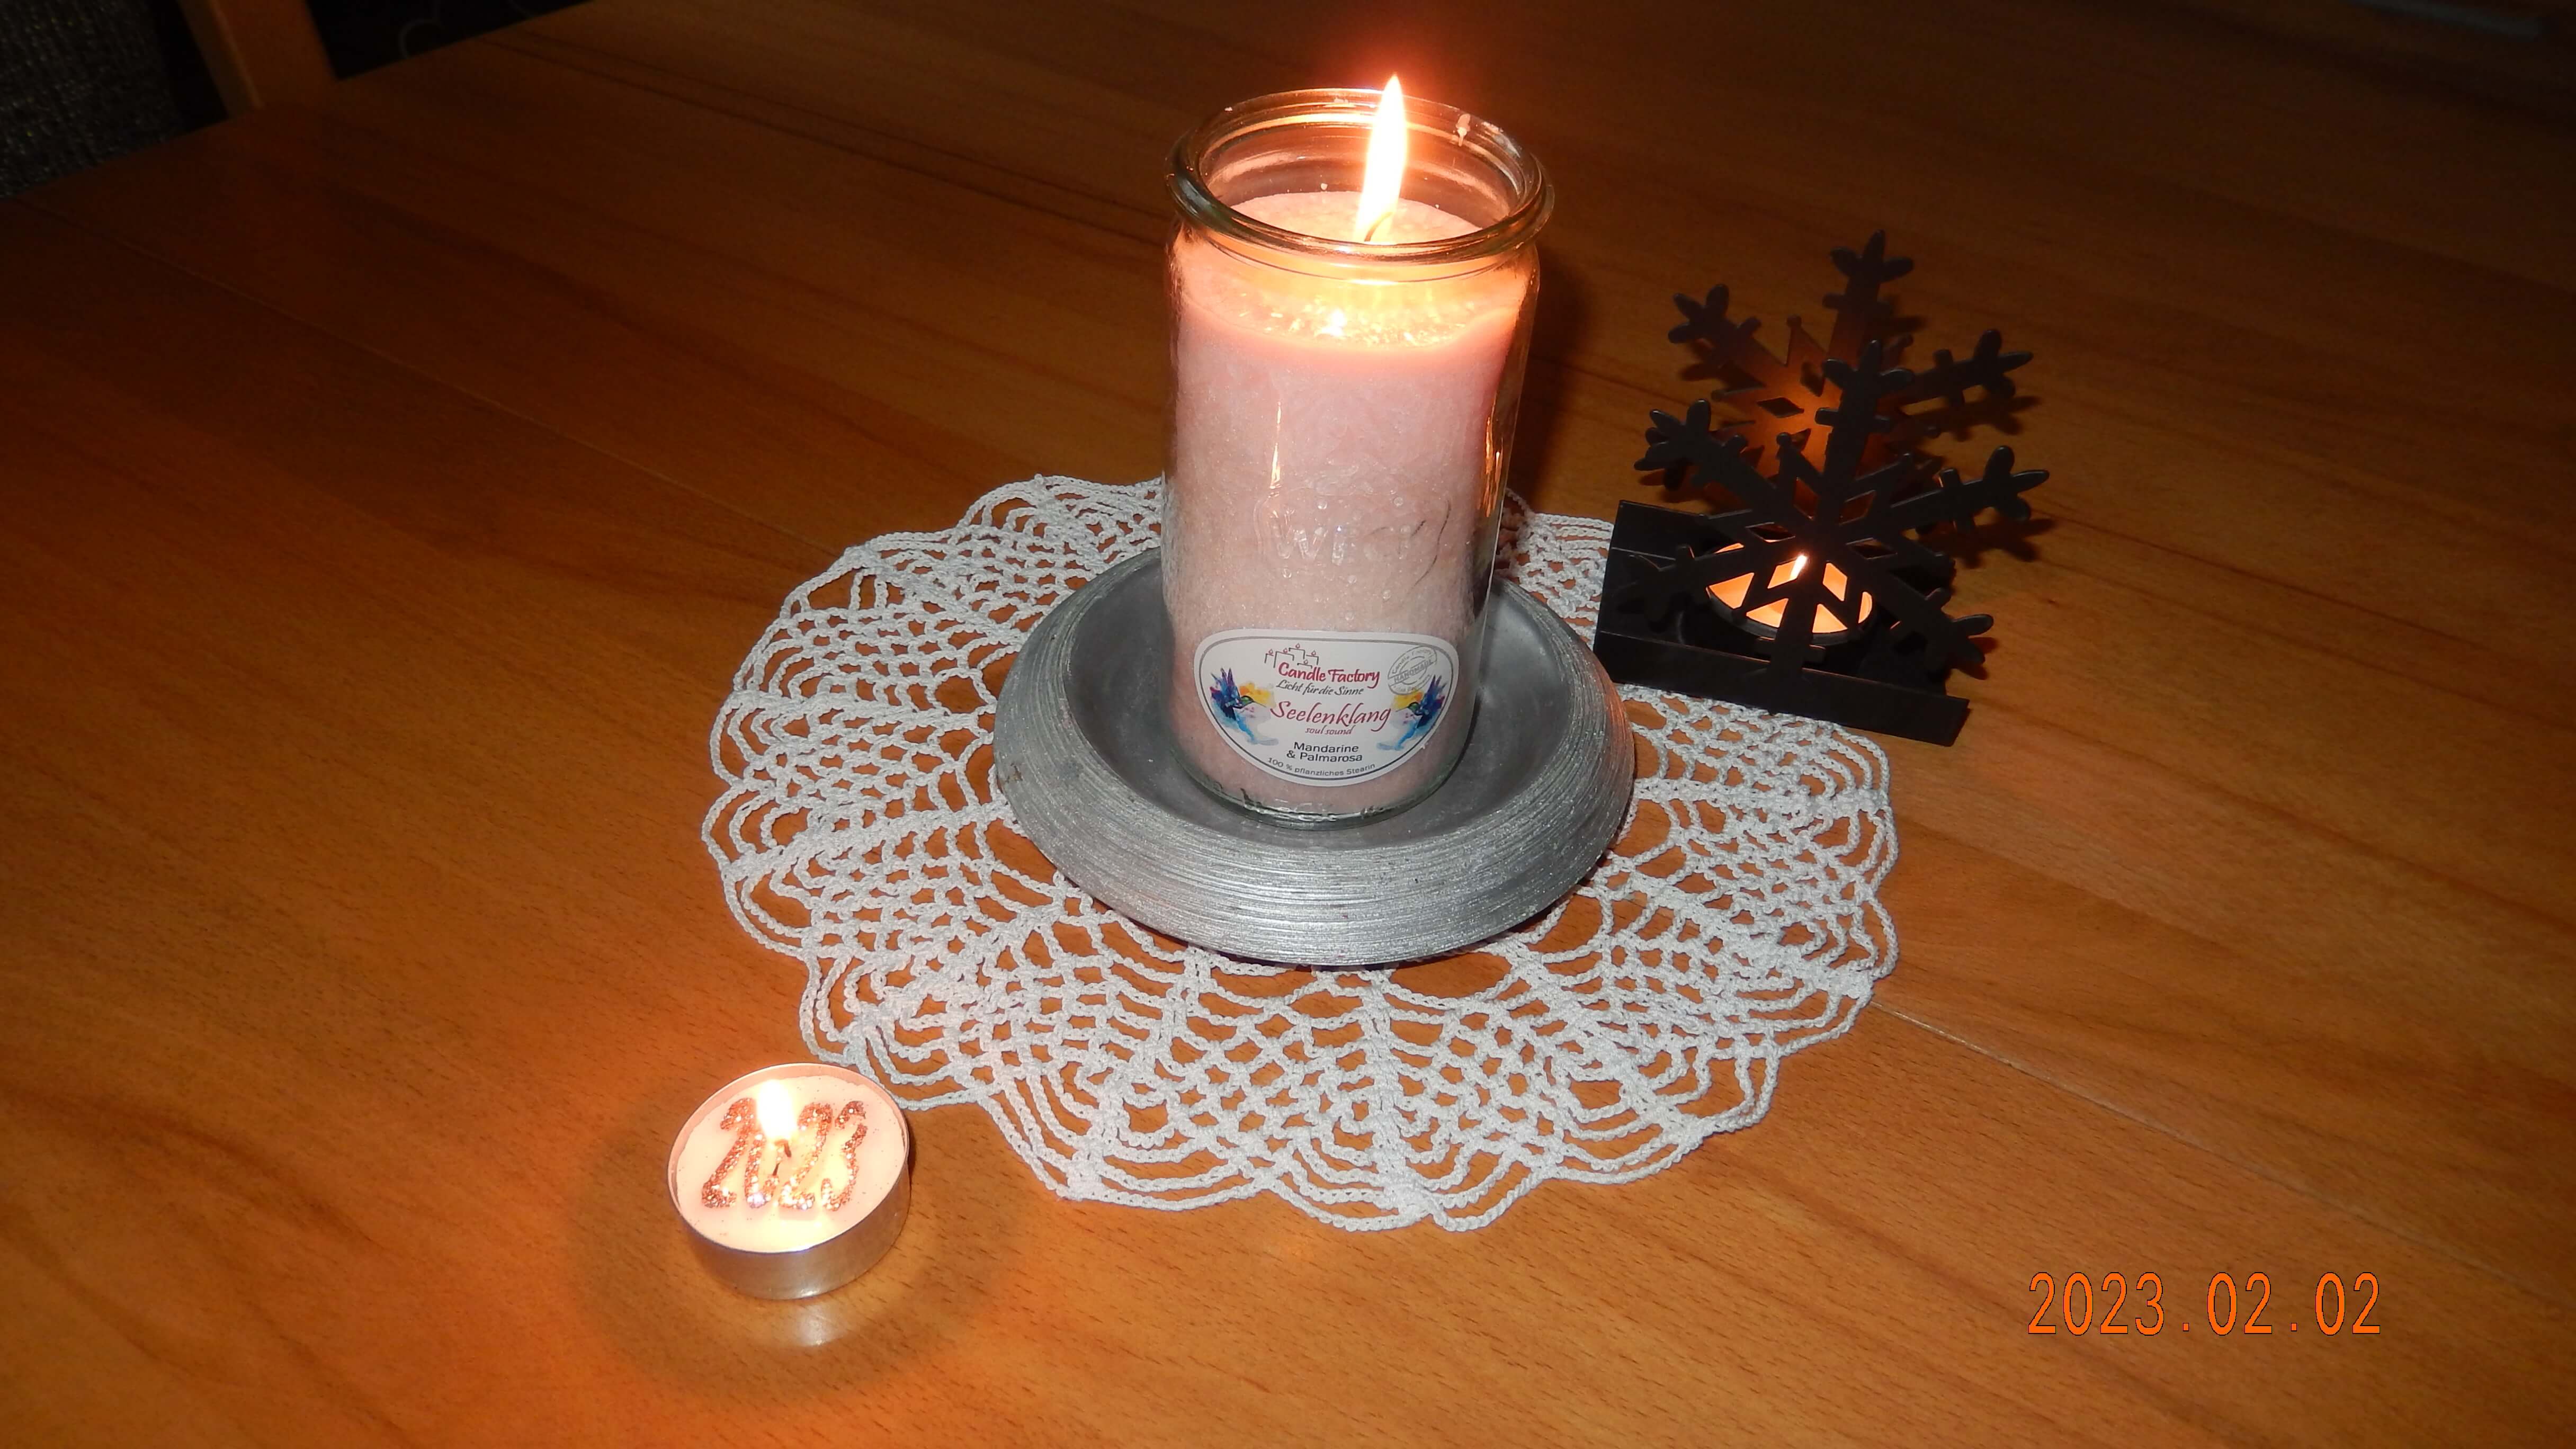 Brennende Kerze auf einem Spitzdeckchen, daneben ein Teelichthalter in Schneeflocken-Form